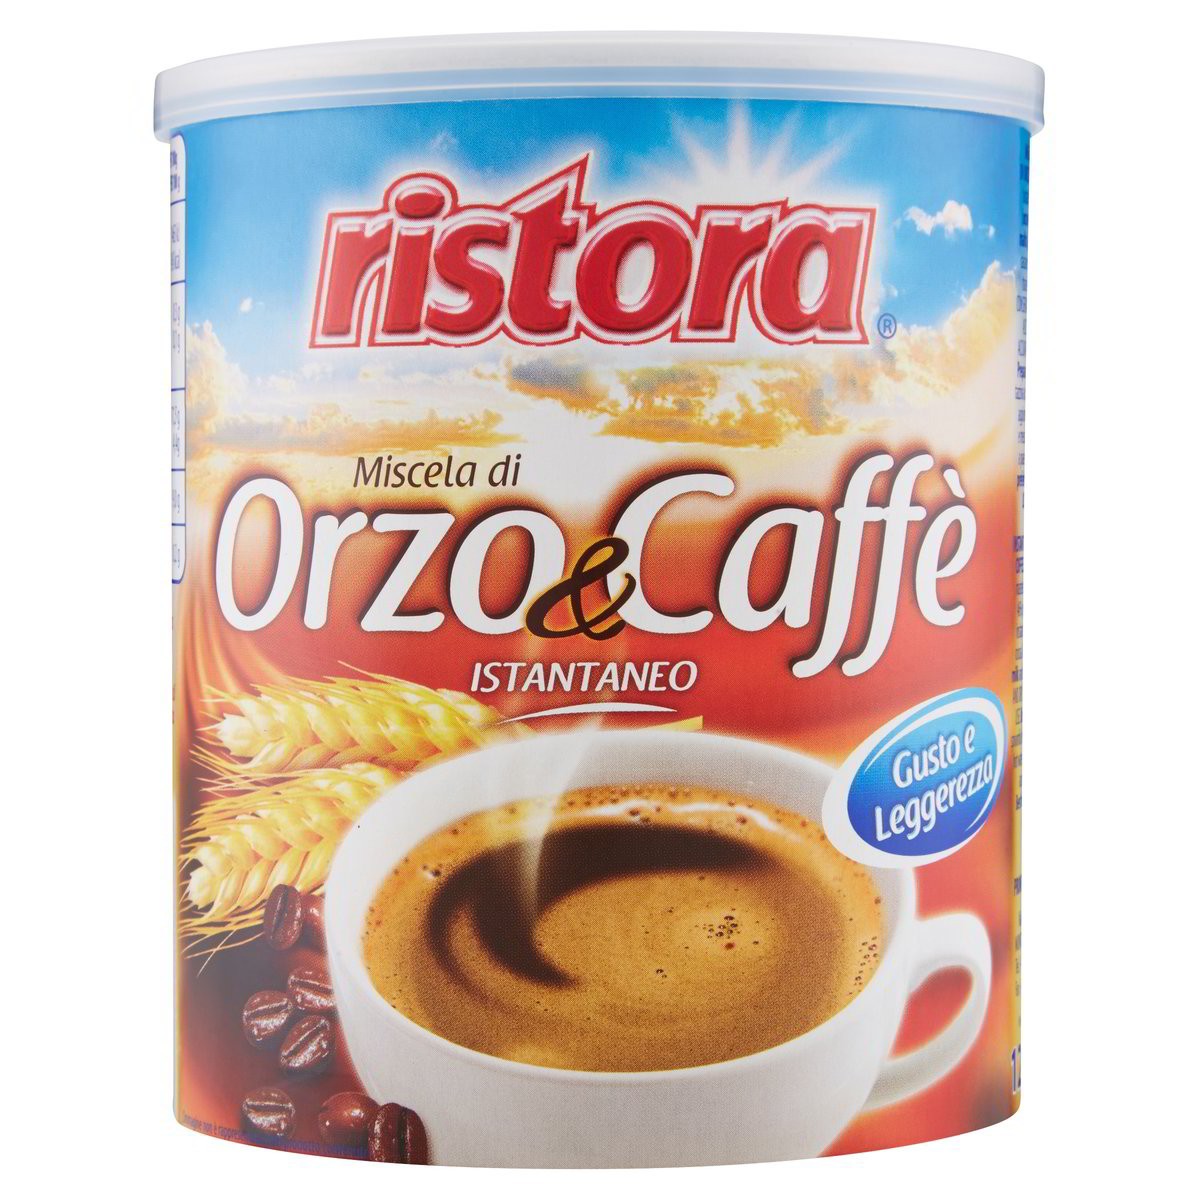 Ristora Miscela di Orzo&Caffè istantaneo